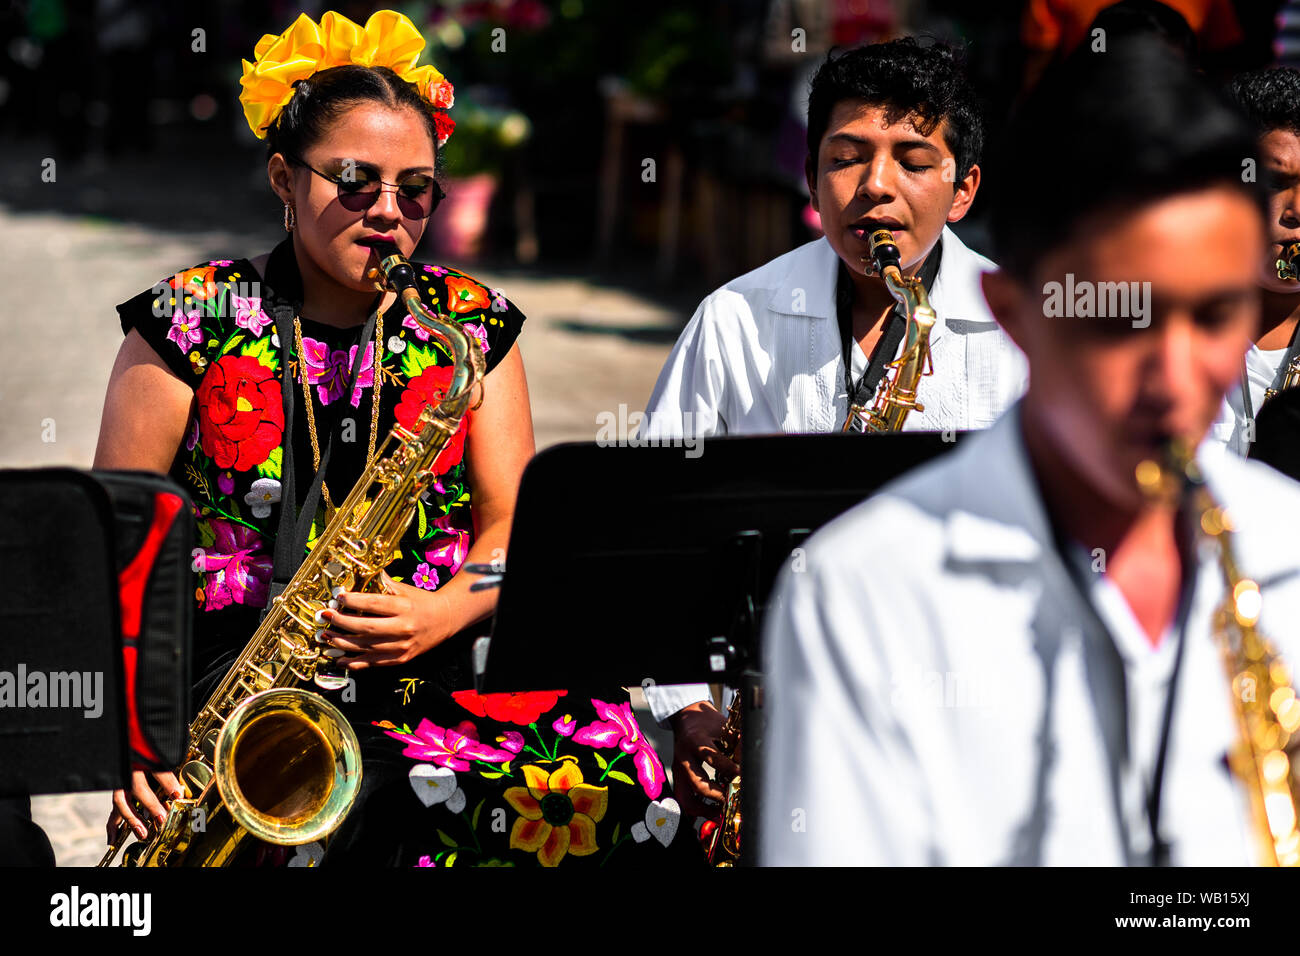 Une jeune fille d'origine mexicaine zapotèque, portant des vêtements traditionnels Tehuana, joue du saxophone pendant le festival à Juchitán de Zaragoza, Mexique. Banque D'Images